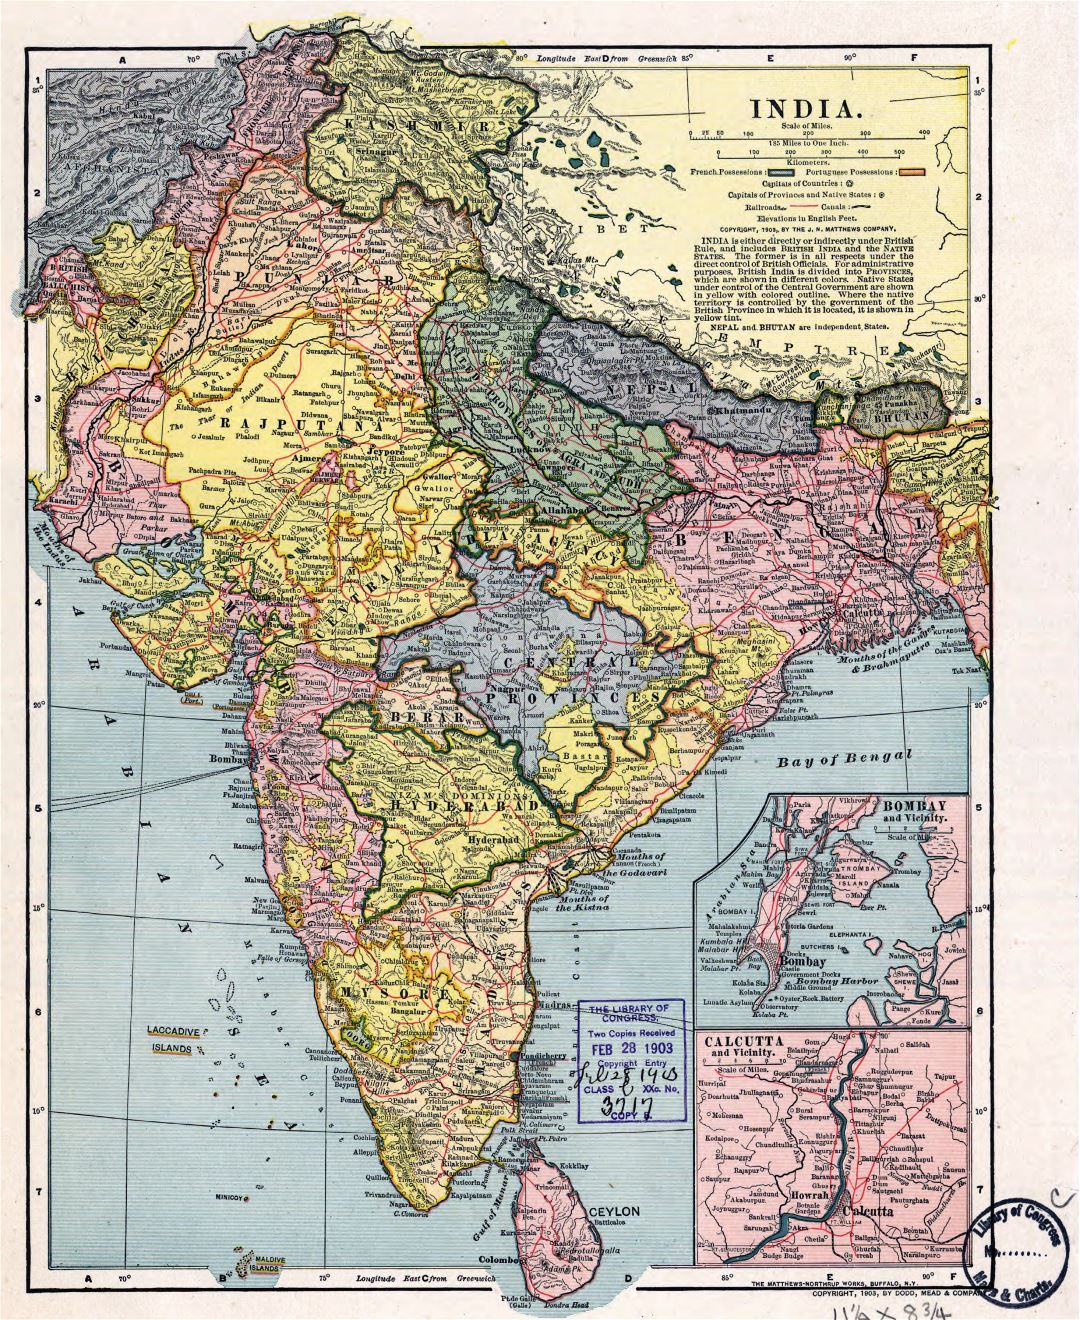 Grande detallado antiguo mapa político y administrativo de la India